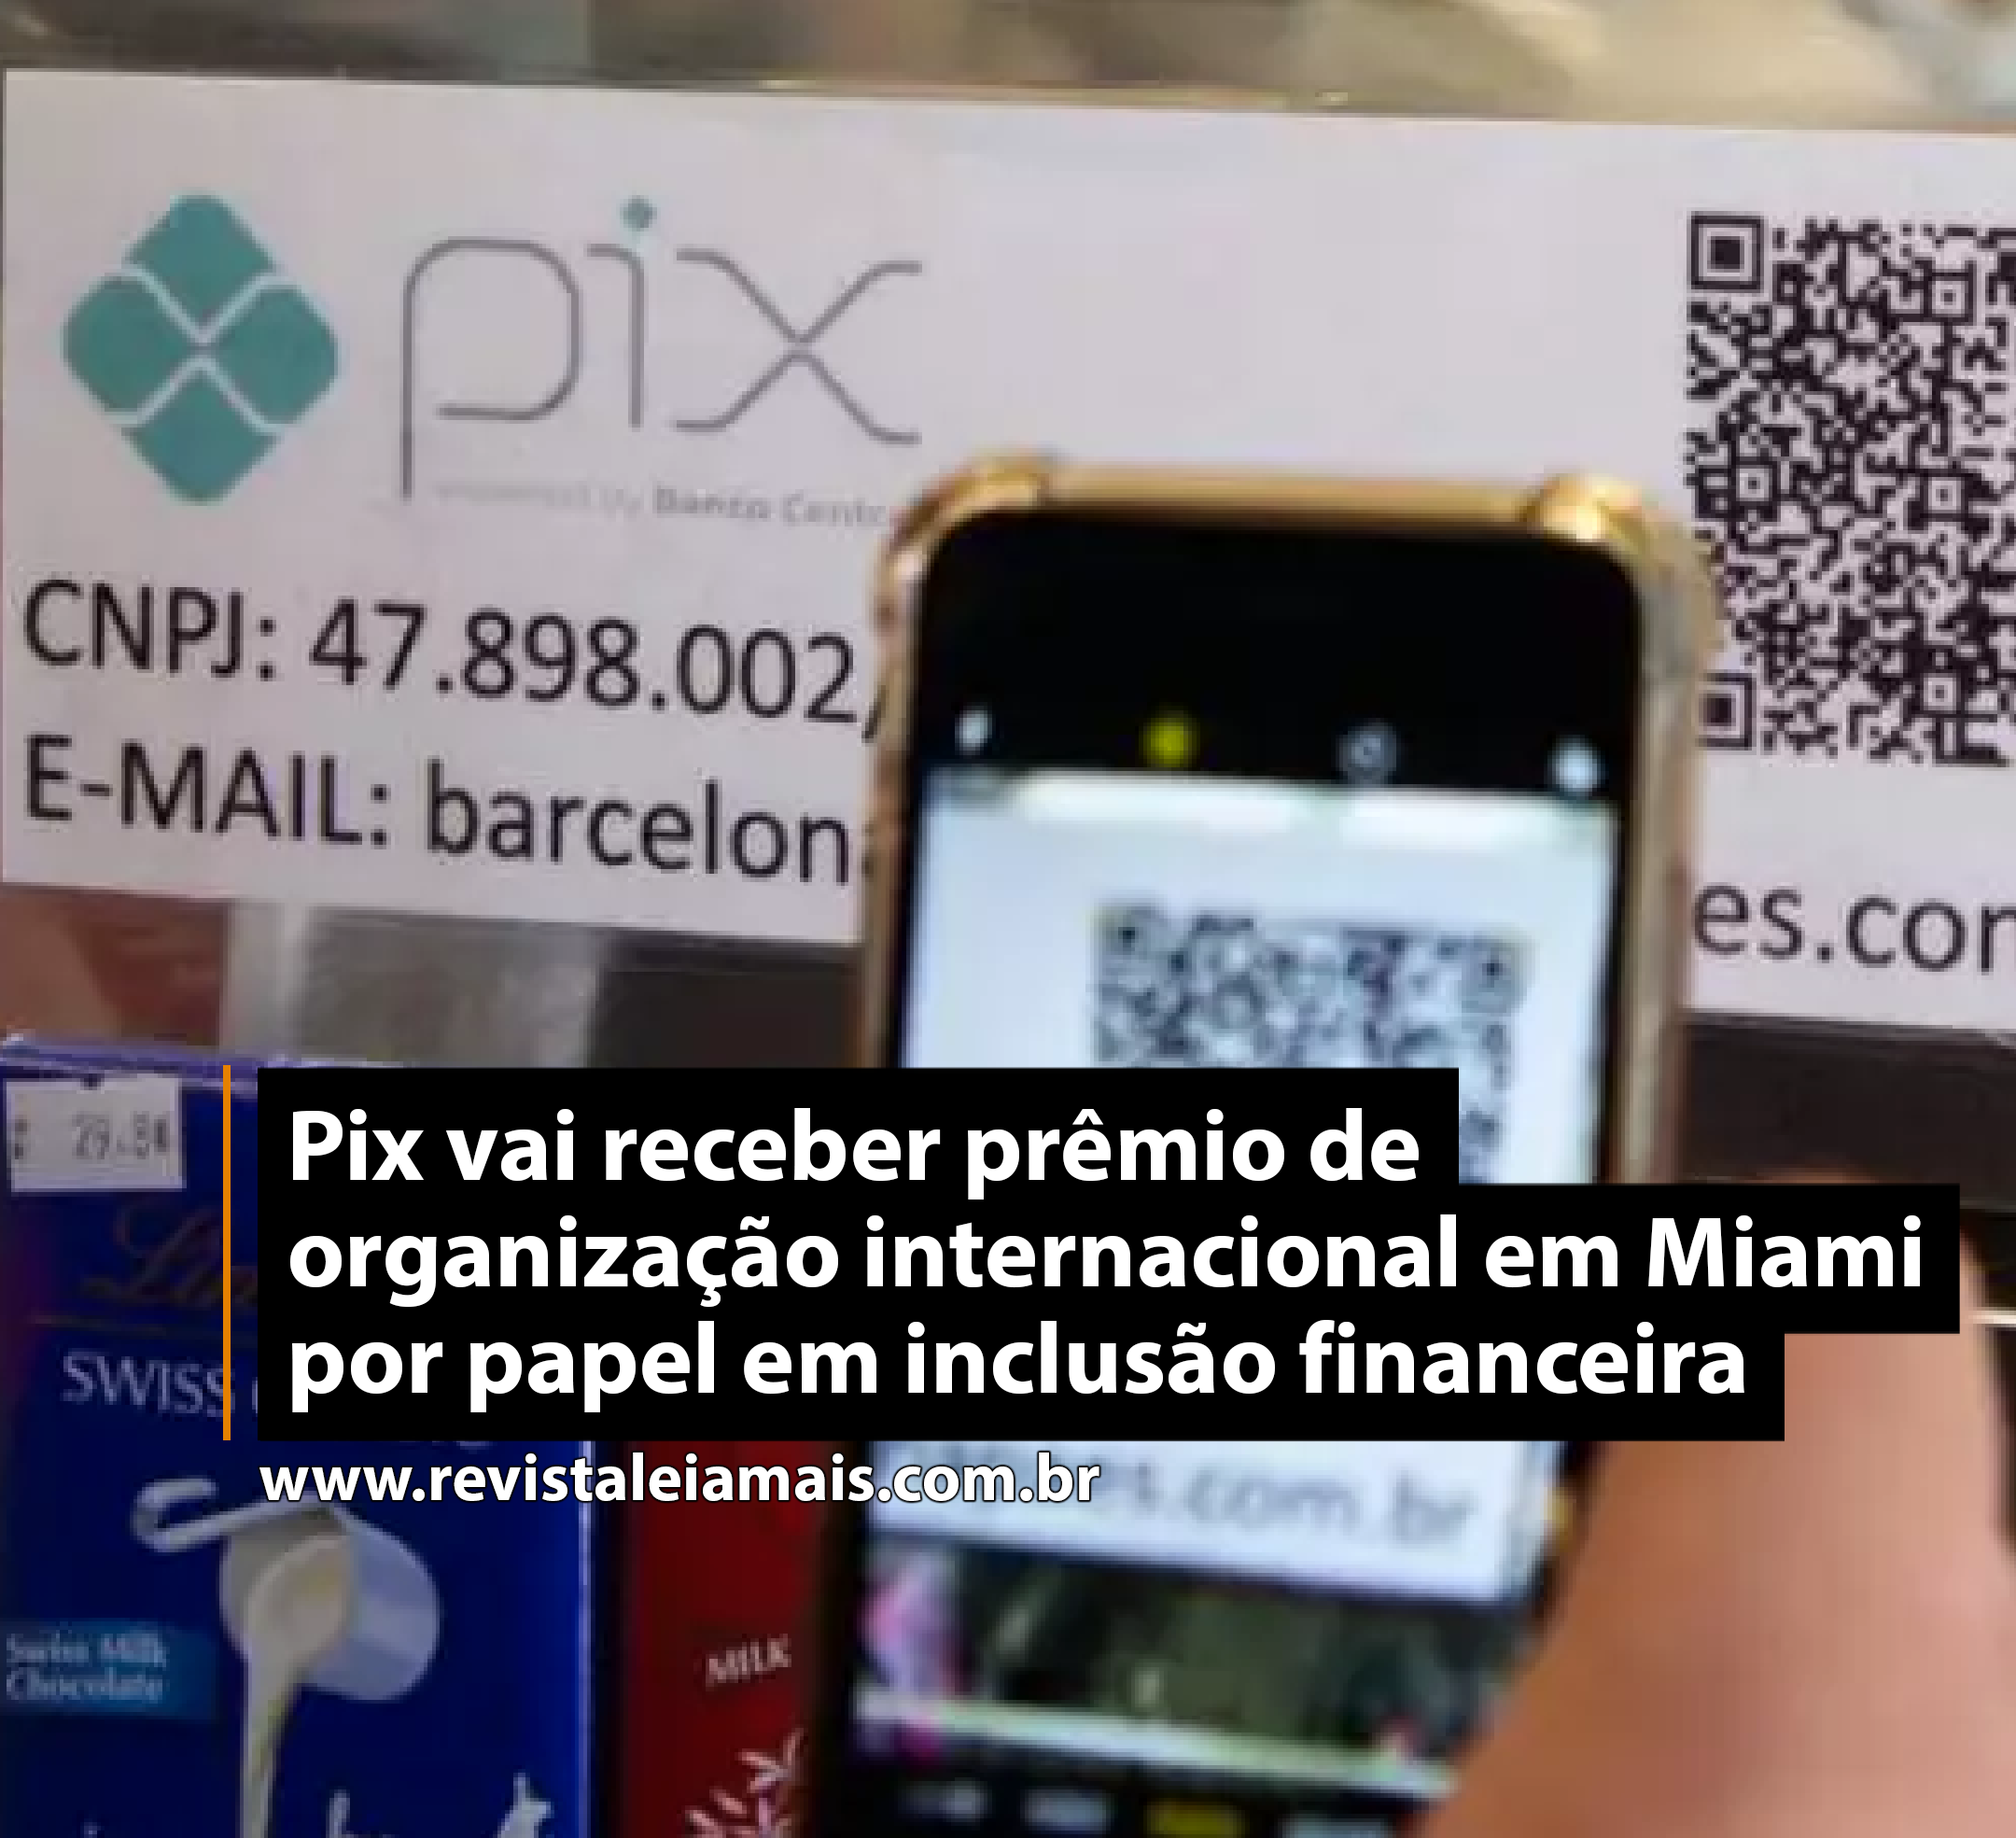 Pix vai receber prêmio de organização internacional em Miami por papel em inclusão financeira